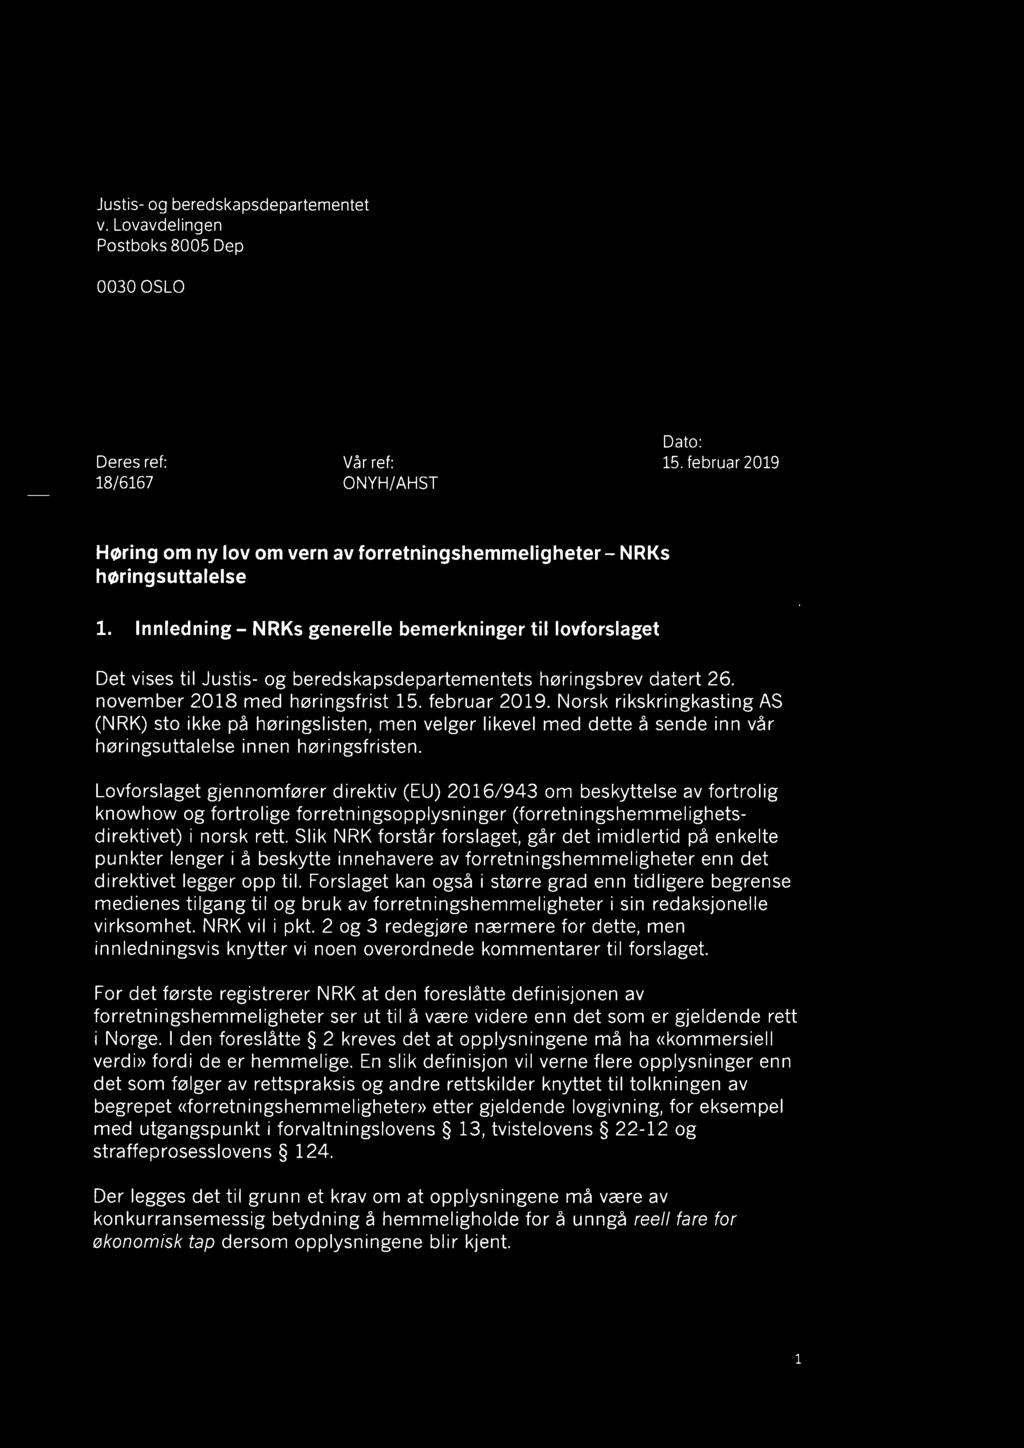 Innledning- NRKs generelle bemerkninger til lovforslaget Det vises til Justis- og beredskapsdepartementets høringsbrev datert 26. november 2018 med høringsfrist 15. februar 2019.